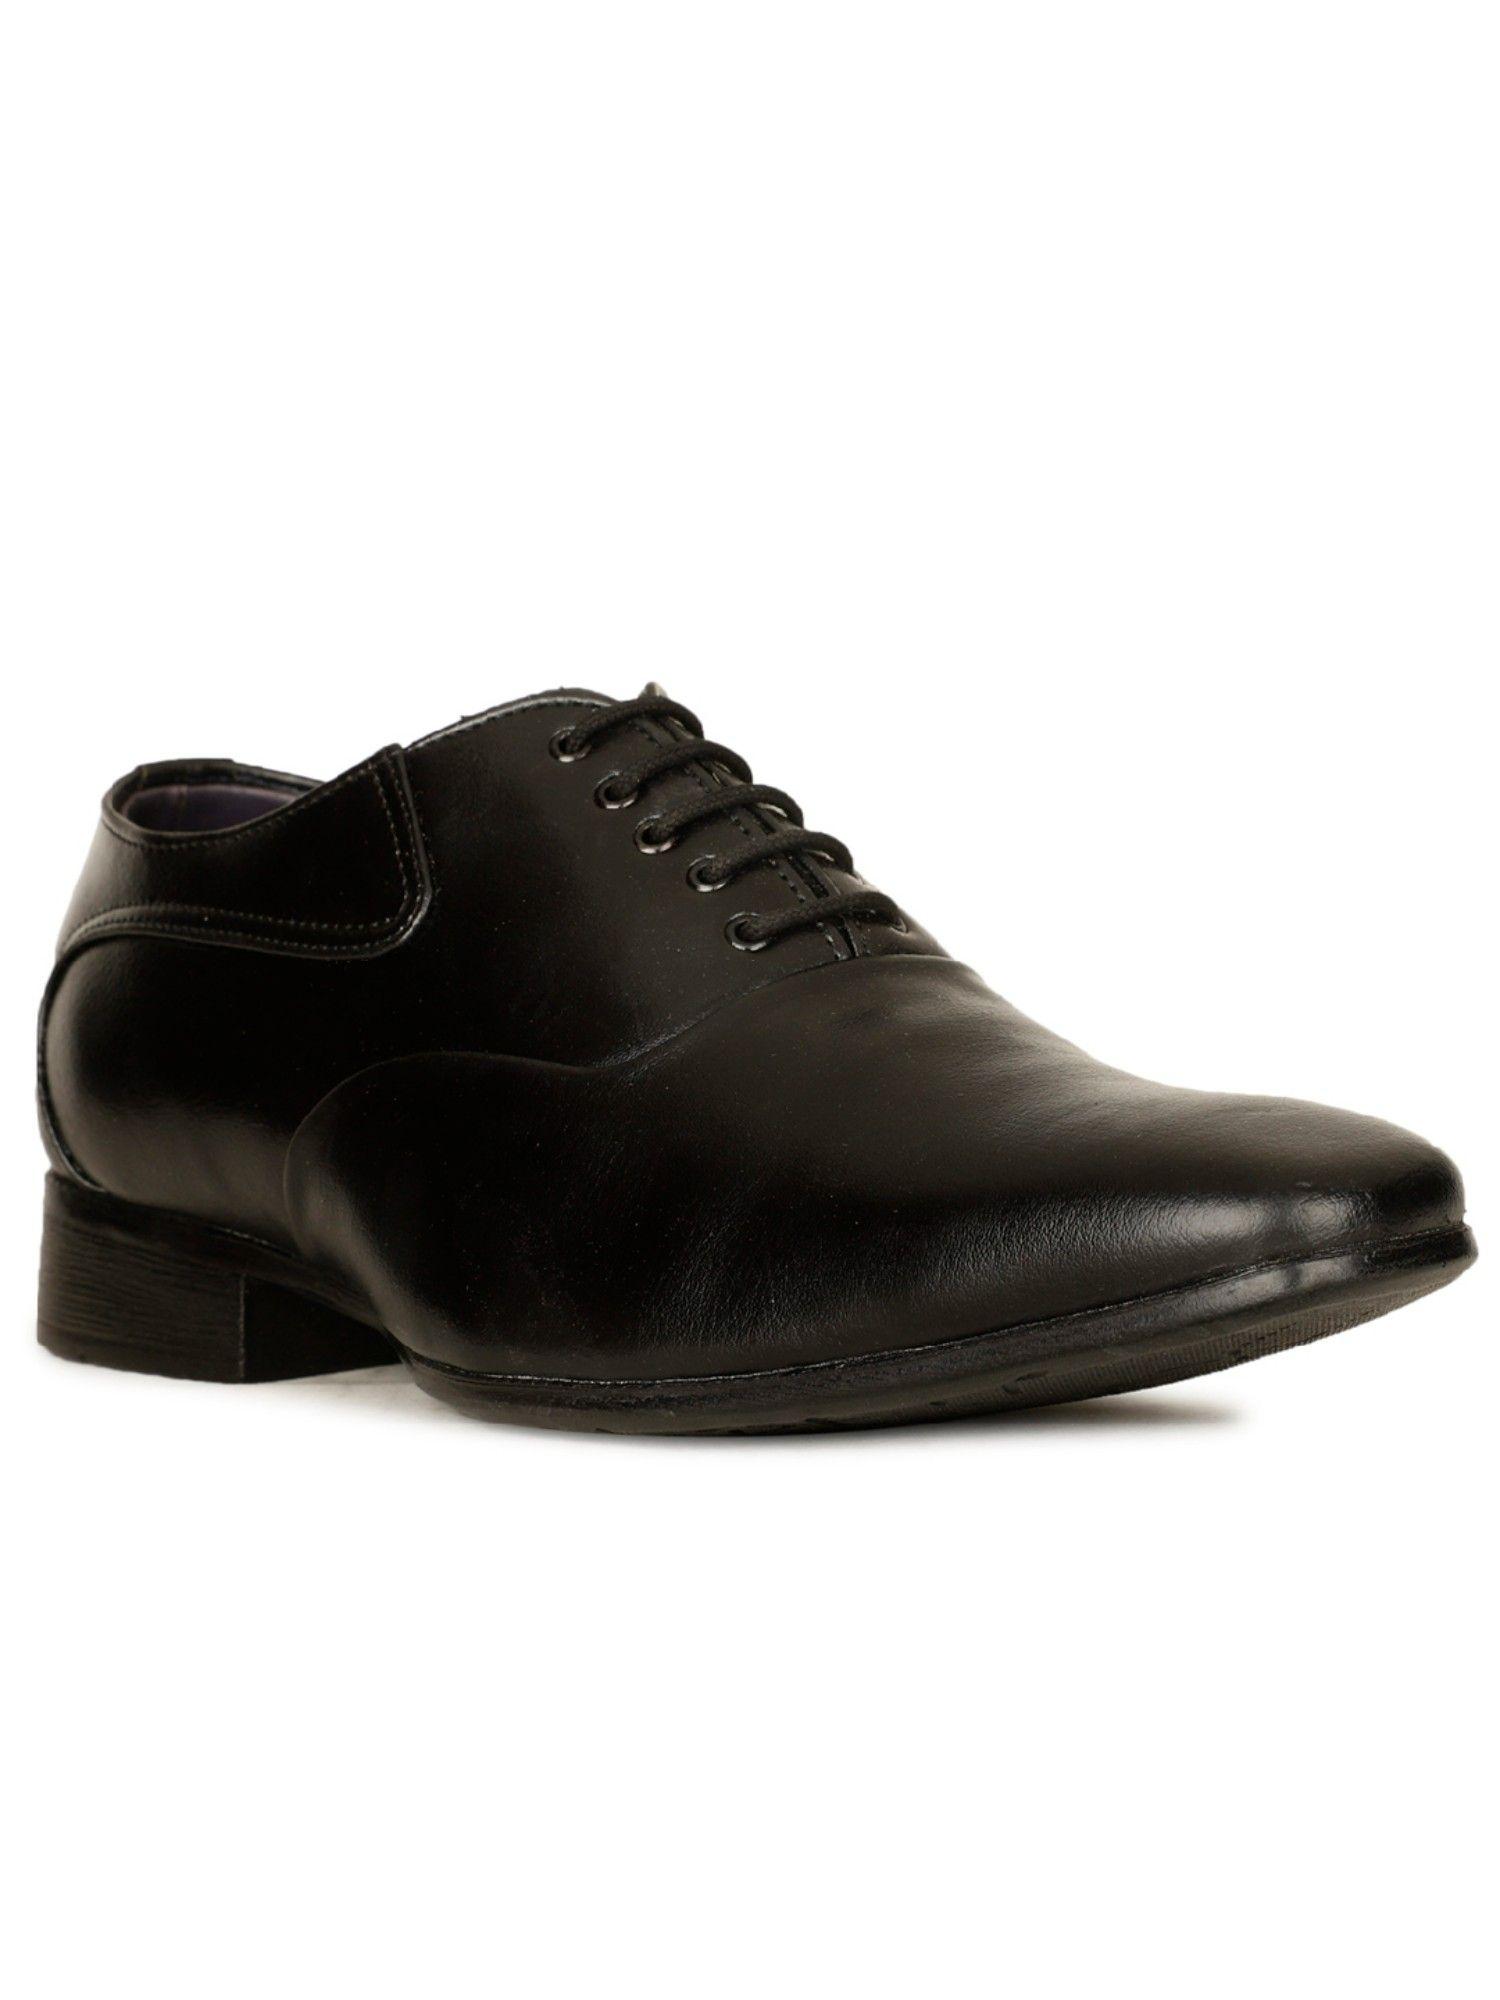 men-lace-up-formal-shoes